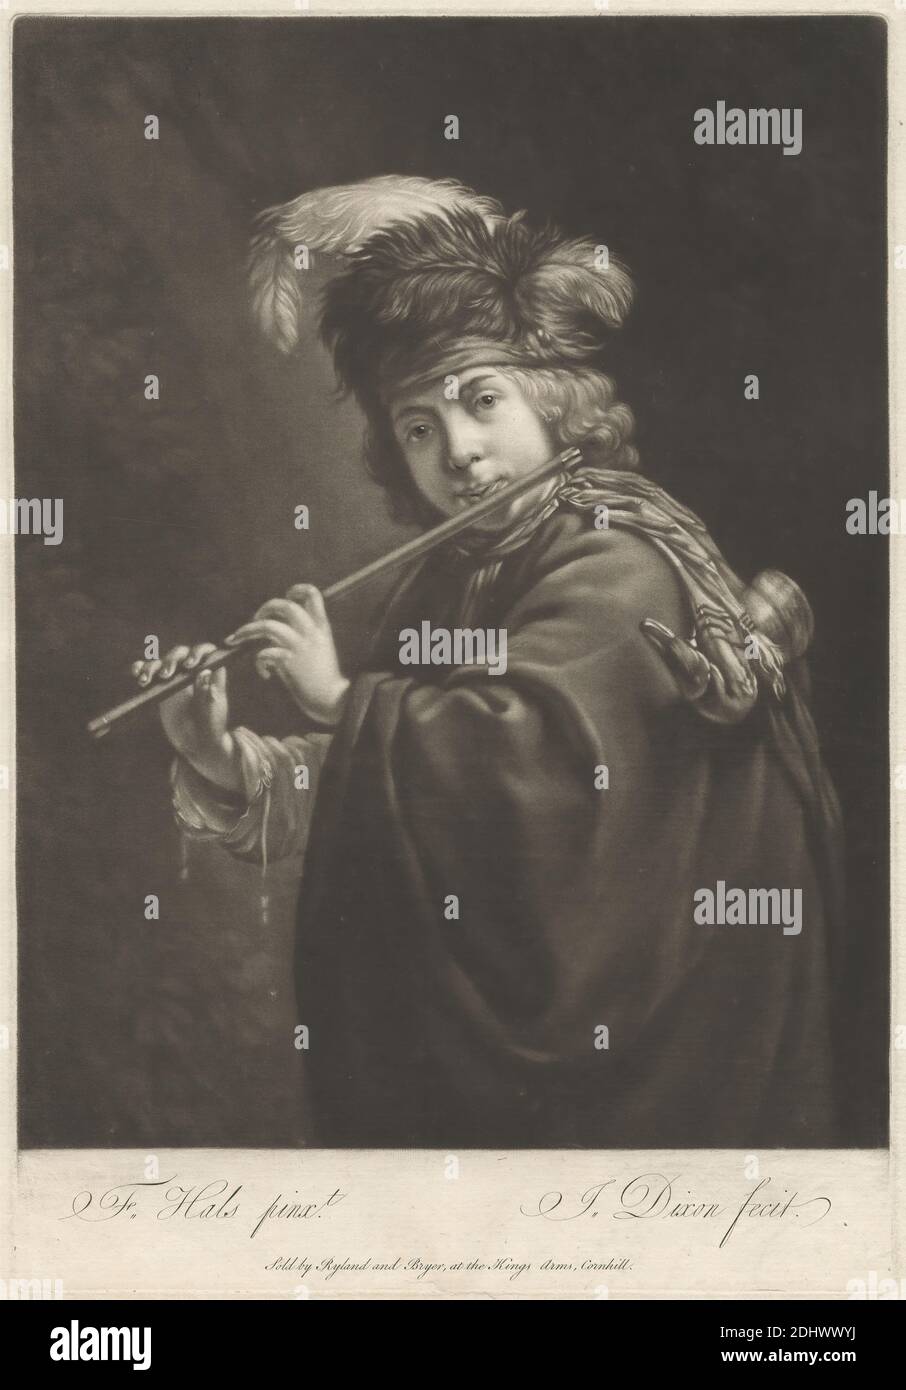 Flûte Player, imprimé par John Dixon, ca. 1740–1811, irlandais, après Franz Hals, vers. 1580–1666, Néerlandais, publié par William Wynne Ryland, 1732–1783, British, et Henry Bryer, décédé en 1782 ou avant, British, entre 1765 et 1771, Mezzotint sur papier beige modérément épais, légèrement texturé, feuille: 14 3/16 x 10 15/16 pouces (36 x 27.8 cm), plaque: 12 7/8 x 8 11/16 pouces (32.7 x 22 cm), et image : 11 7/16 x 8 11/16 pouces (29.1 x 22 cm), manteau, boucles, plumes, flûte, regard, sujet de genre, chapeau, homme, musique, musicien, jouer, poser, foulard, debout Banque D'Images